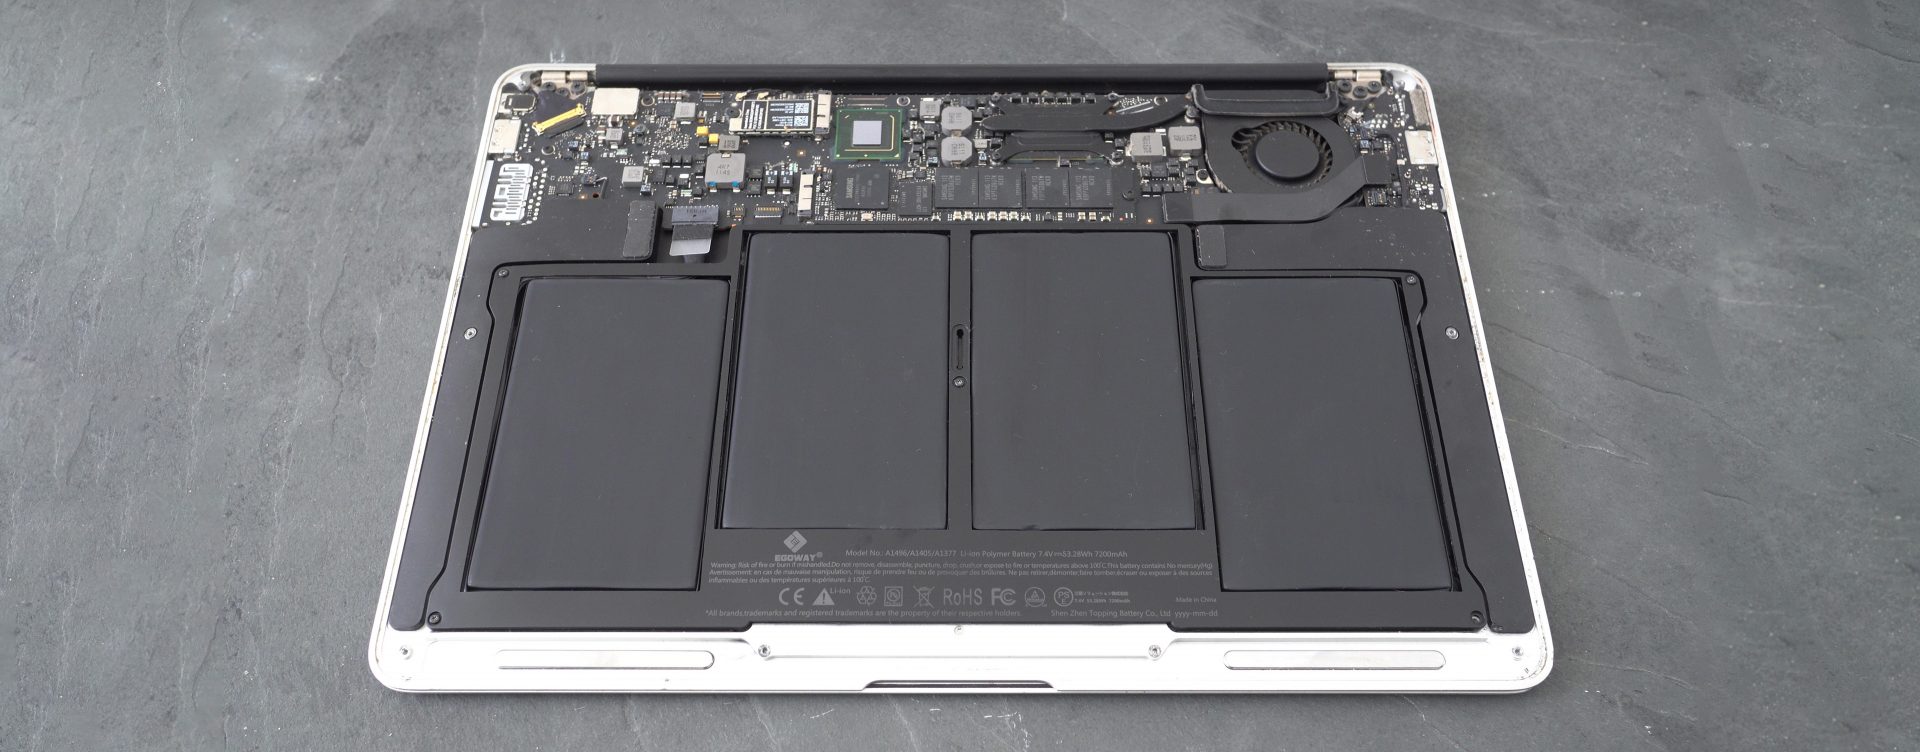 macbook-repair-header